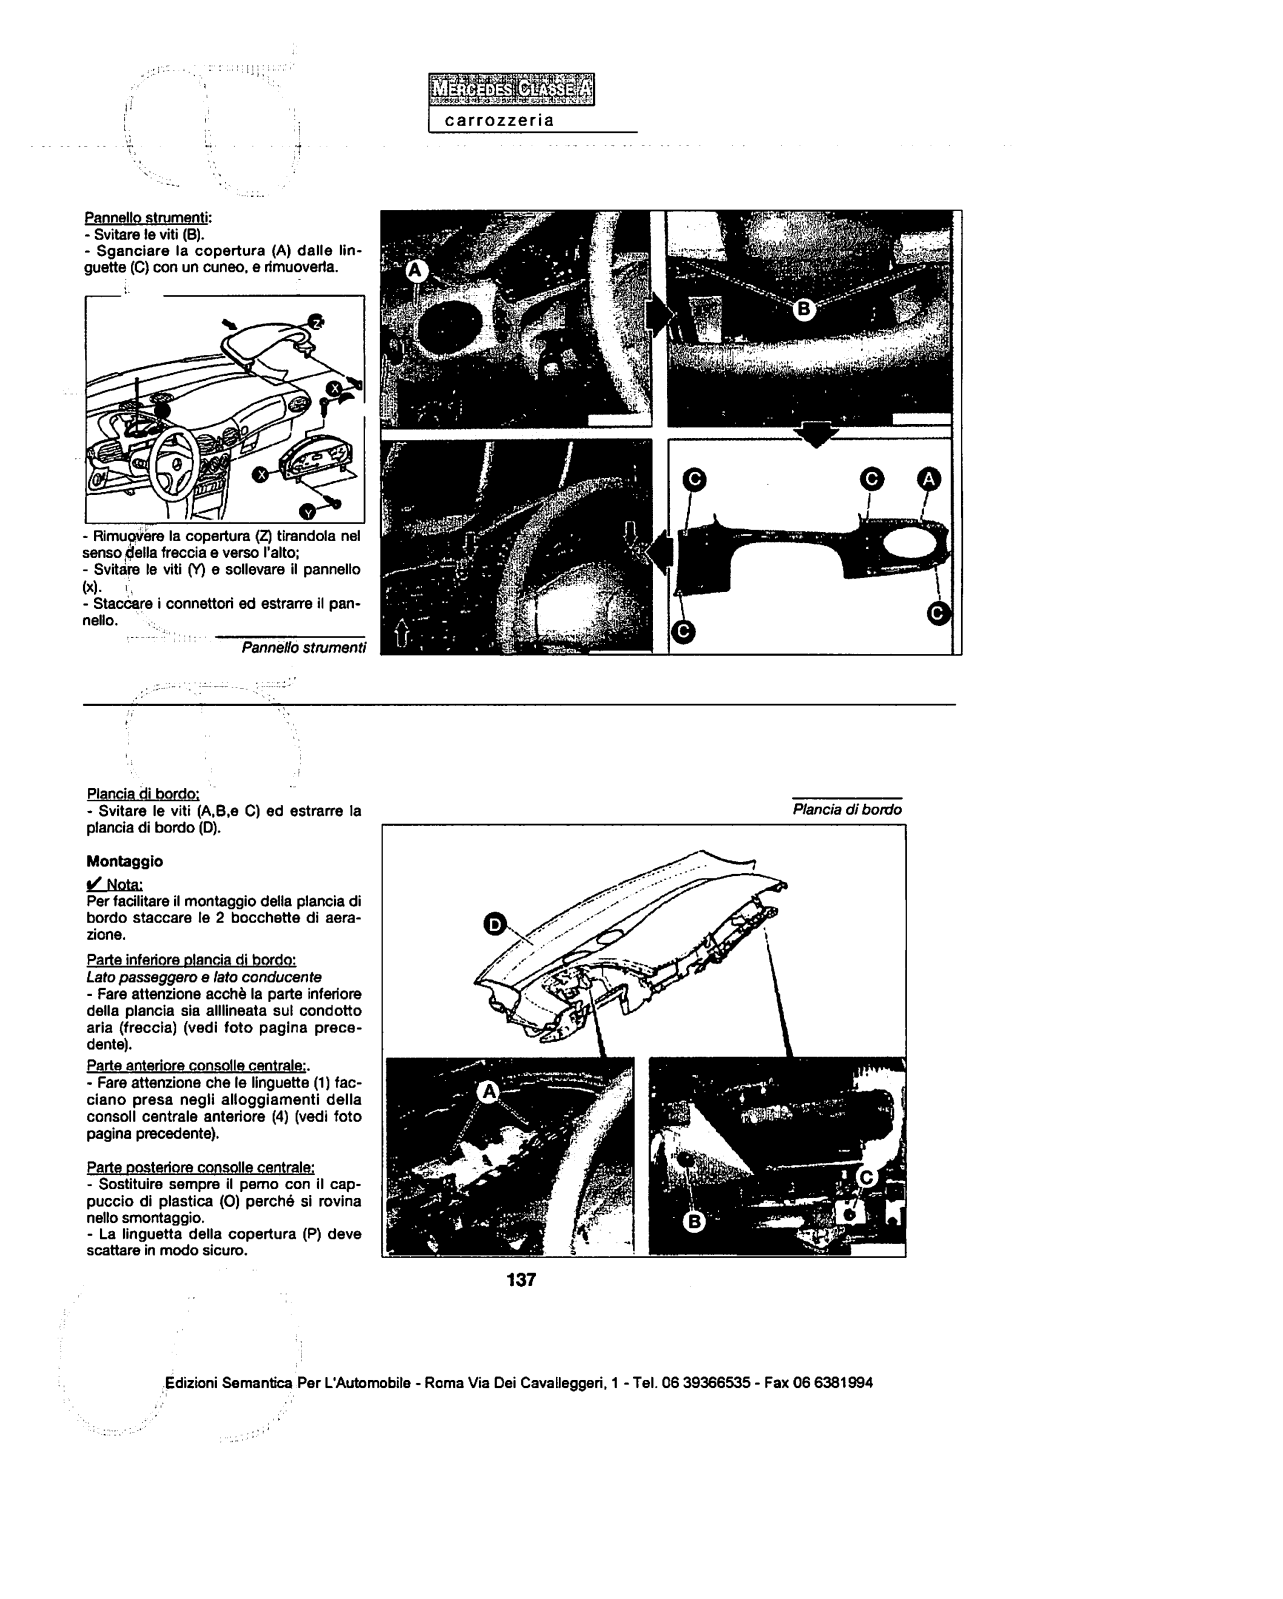 w168 - (W168): Manual técnico - tudo sobre - 1997 a 2004 - italiano 152fddv